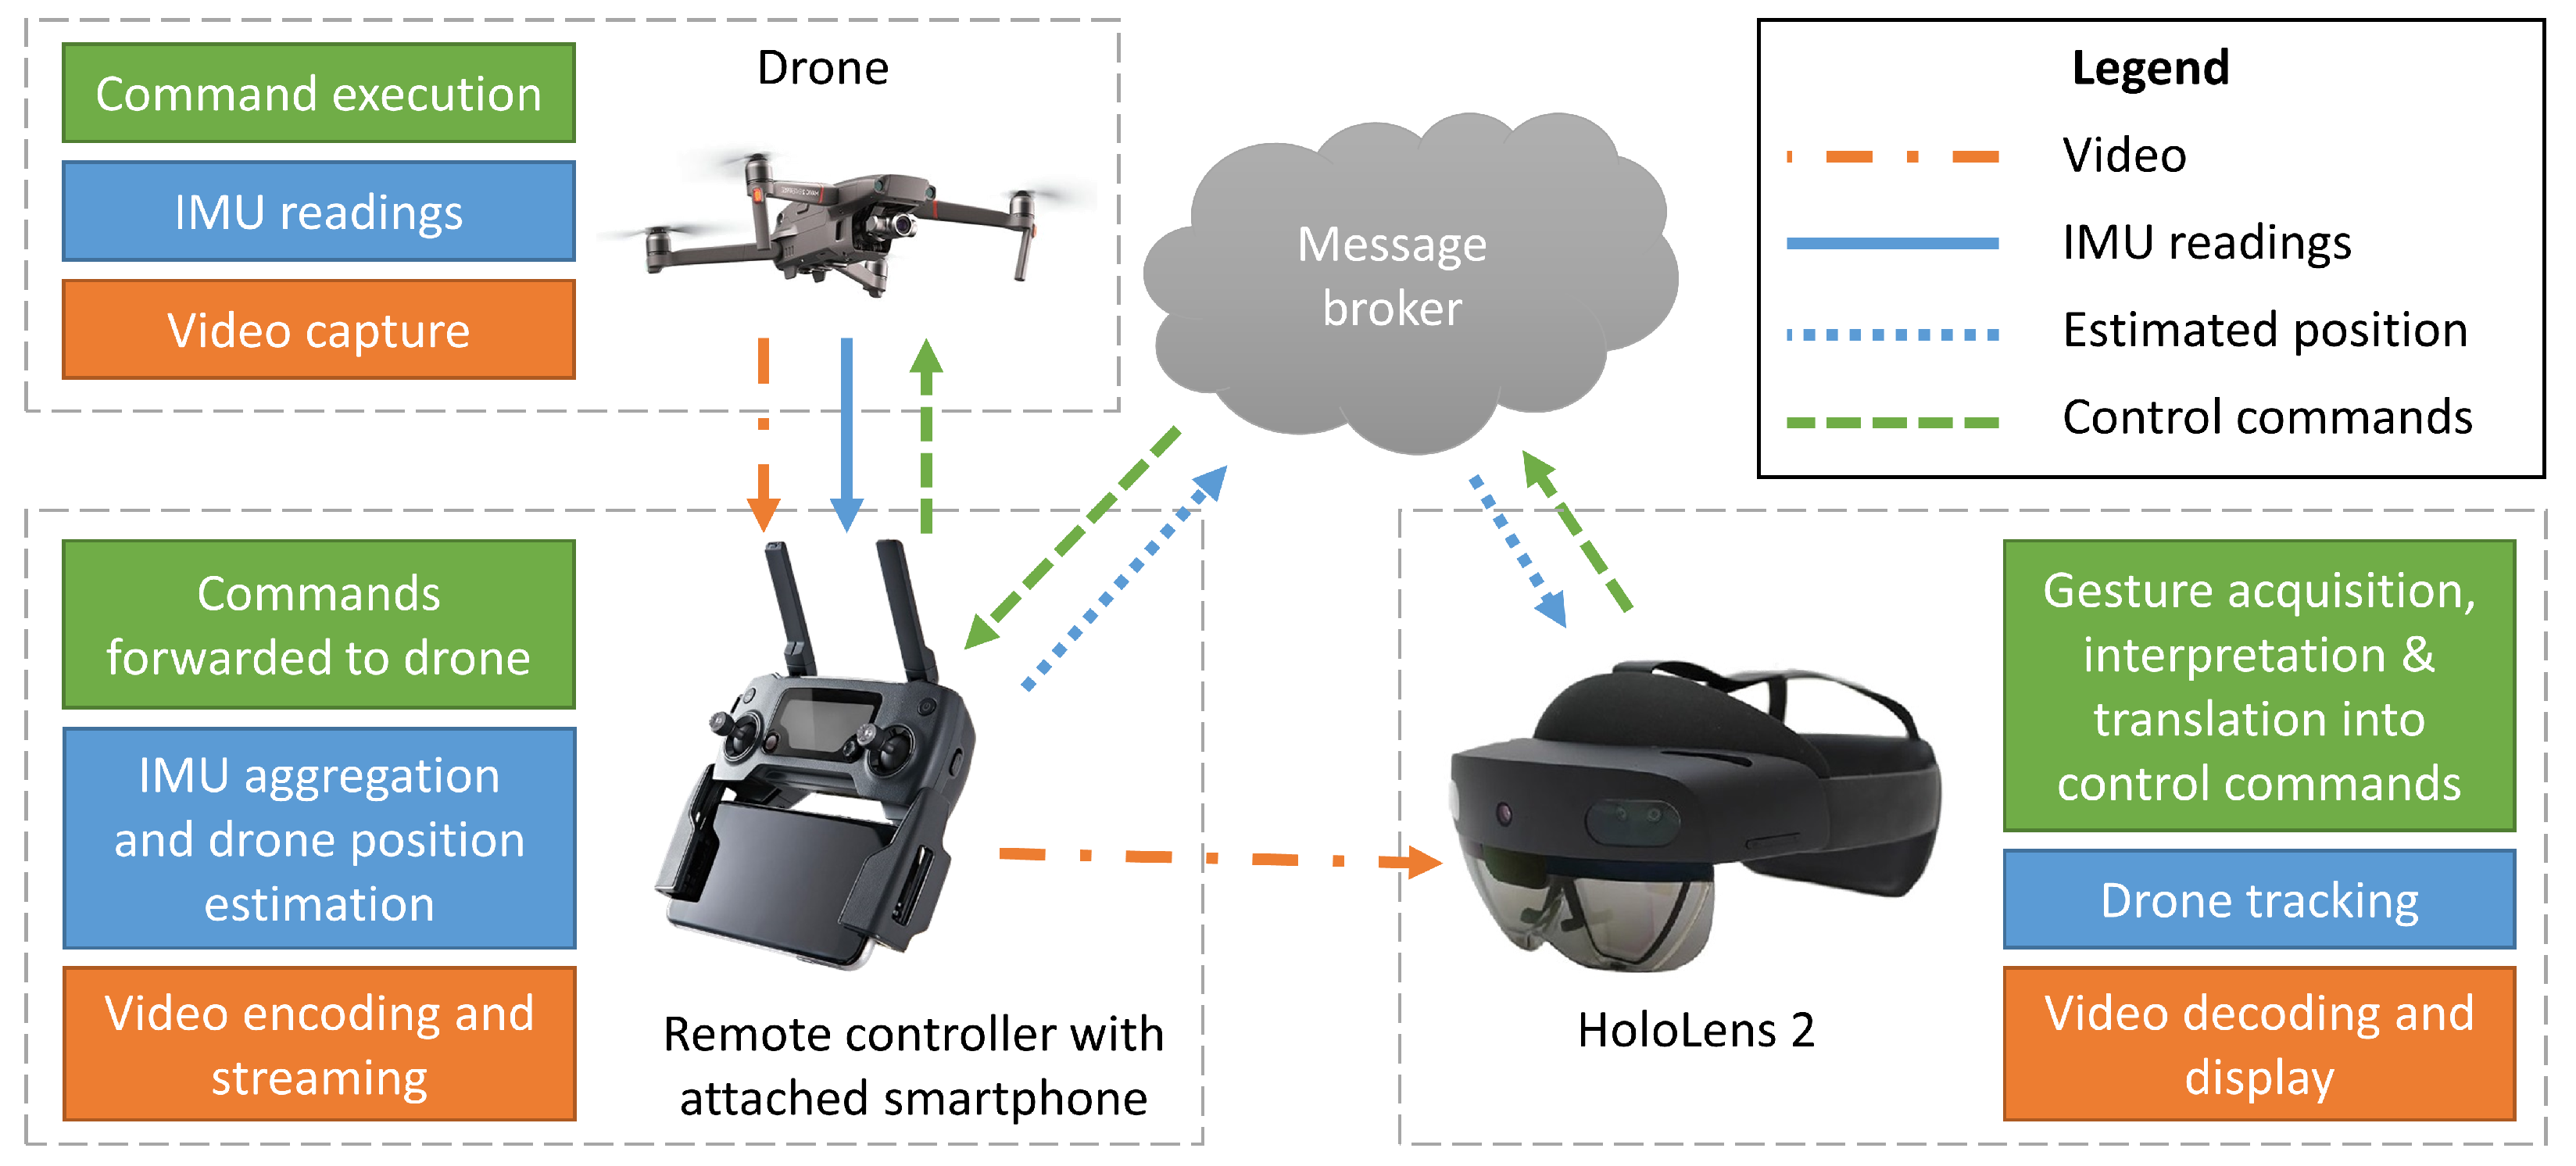 Drone Control in AR: Cảm giác điều khiển drone bằng công nghệ Augmented Reality sẽ đưa bạn đến một trải nghiệm độc đáo, tuyệt vời và khó quên. Hãy xem hình ảnh để hiểu thêm về công nghệ này.